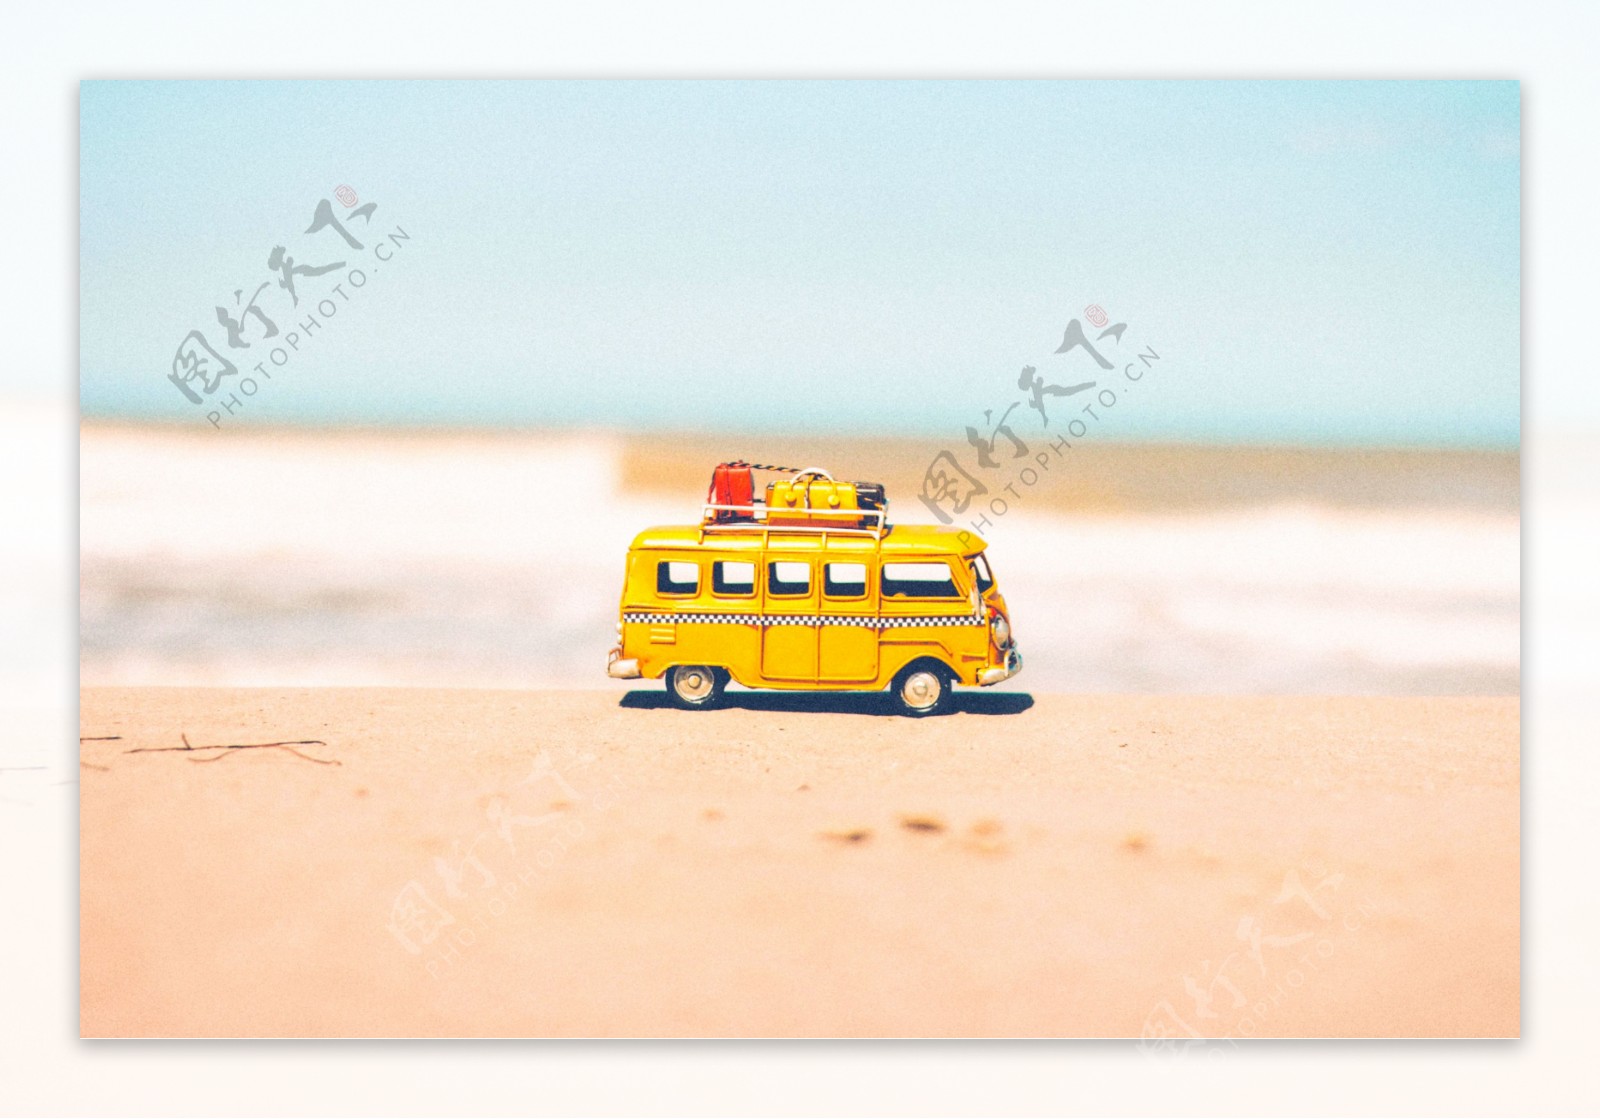 海边沙滩玩具车微景观